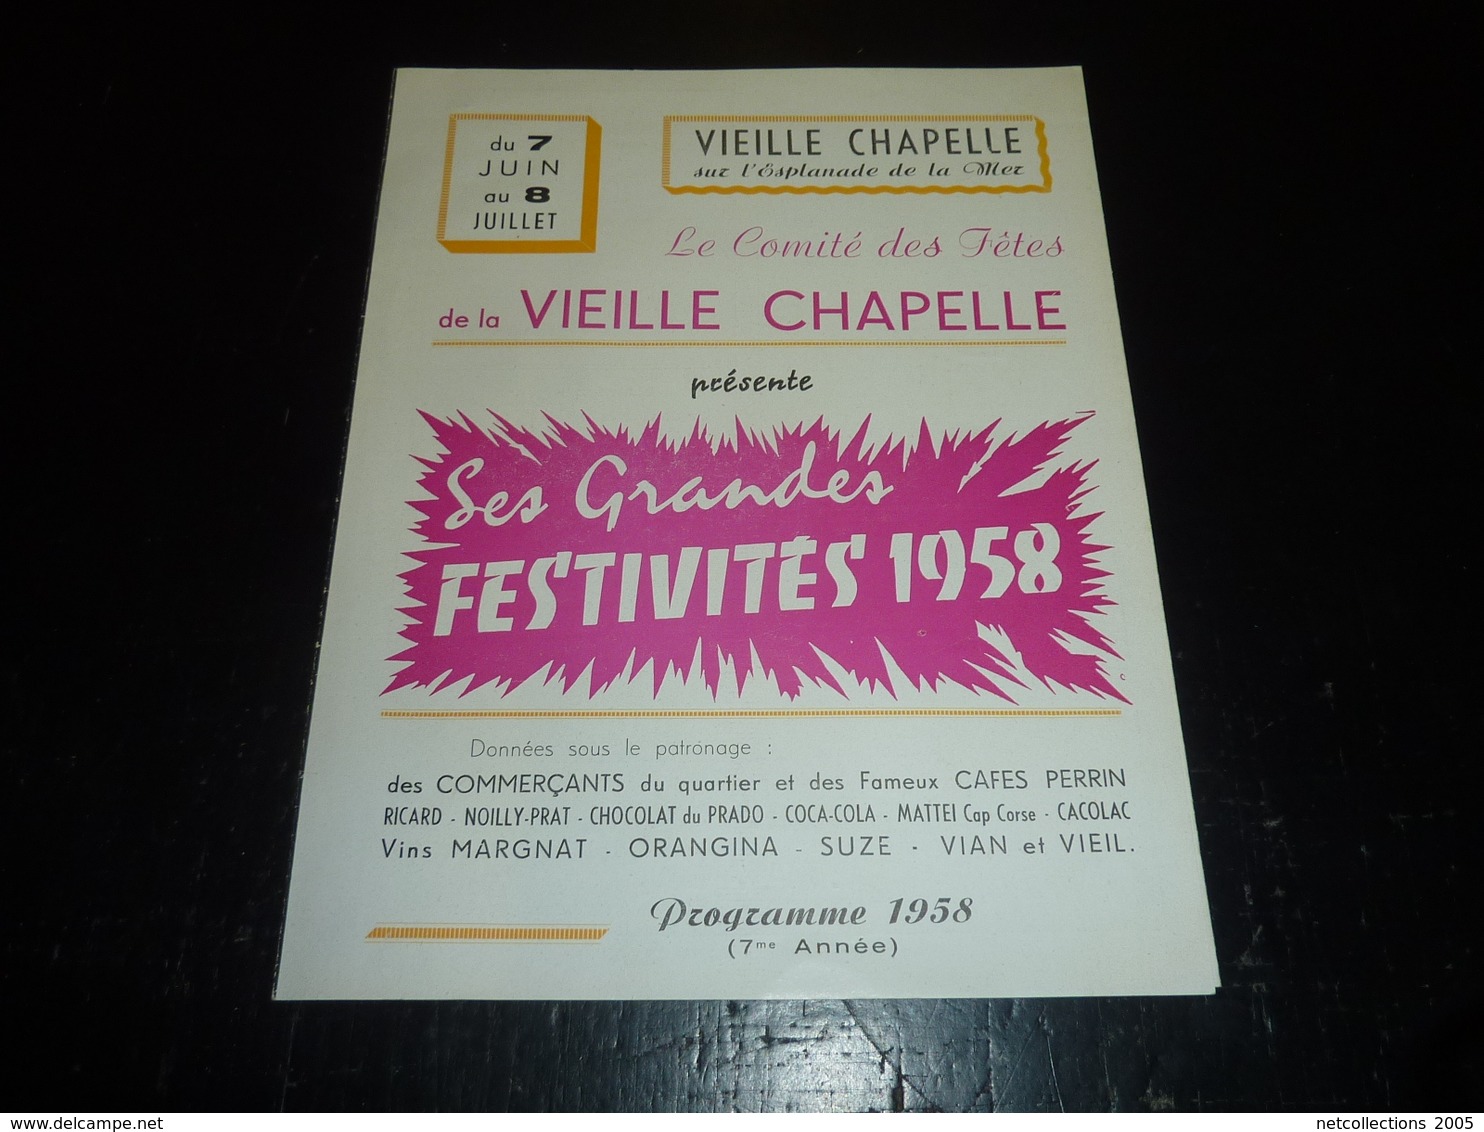 VIEILLE CHAPELLE SUR L'ESPLANADE DE LA MER FESTIVITES 1958 PROGRAMME/PUBLICITAIRE BELLE PUBLICITE CAFE PERRIN 1958 (AD) - Publicité Cinématographique